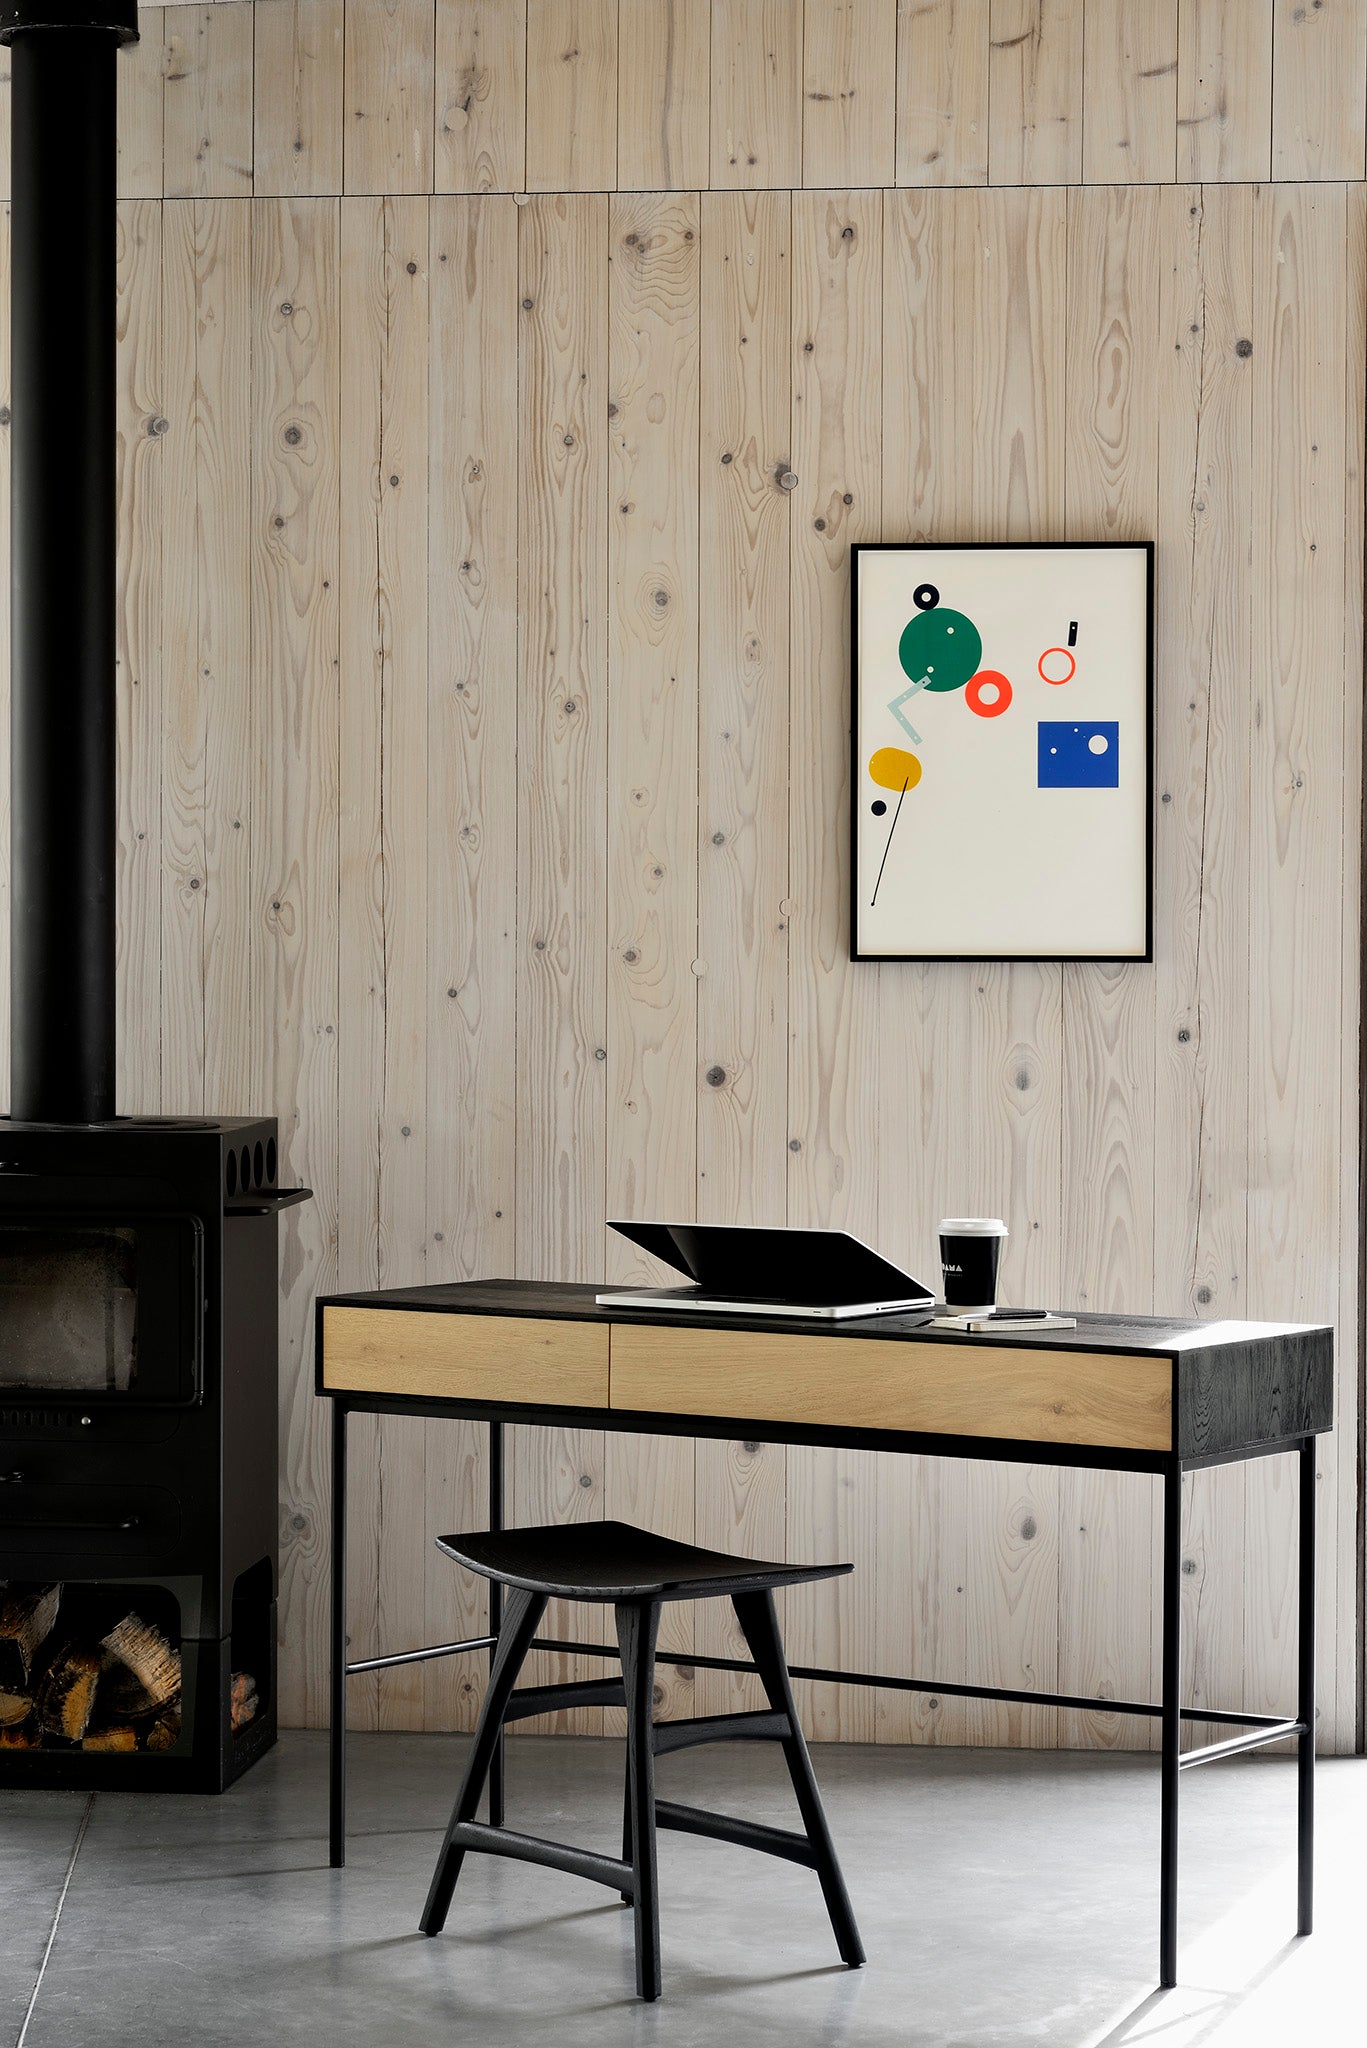 比利時原裝進口實木傢俬 - 辦公系列 - Blackbird系列橡木黑色書桌